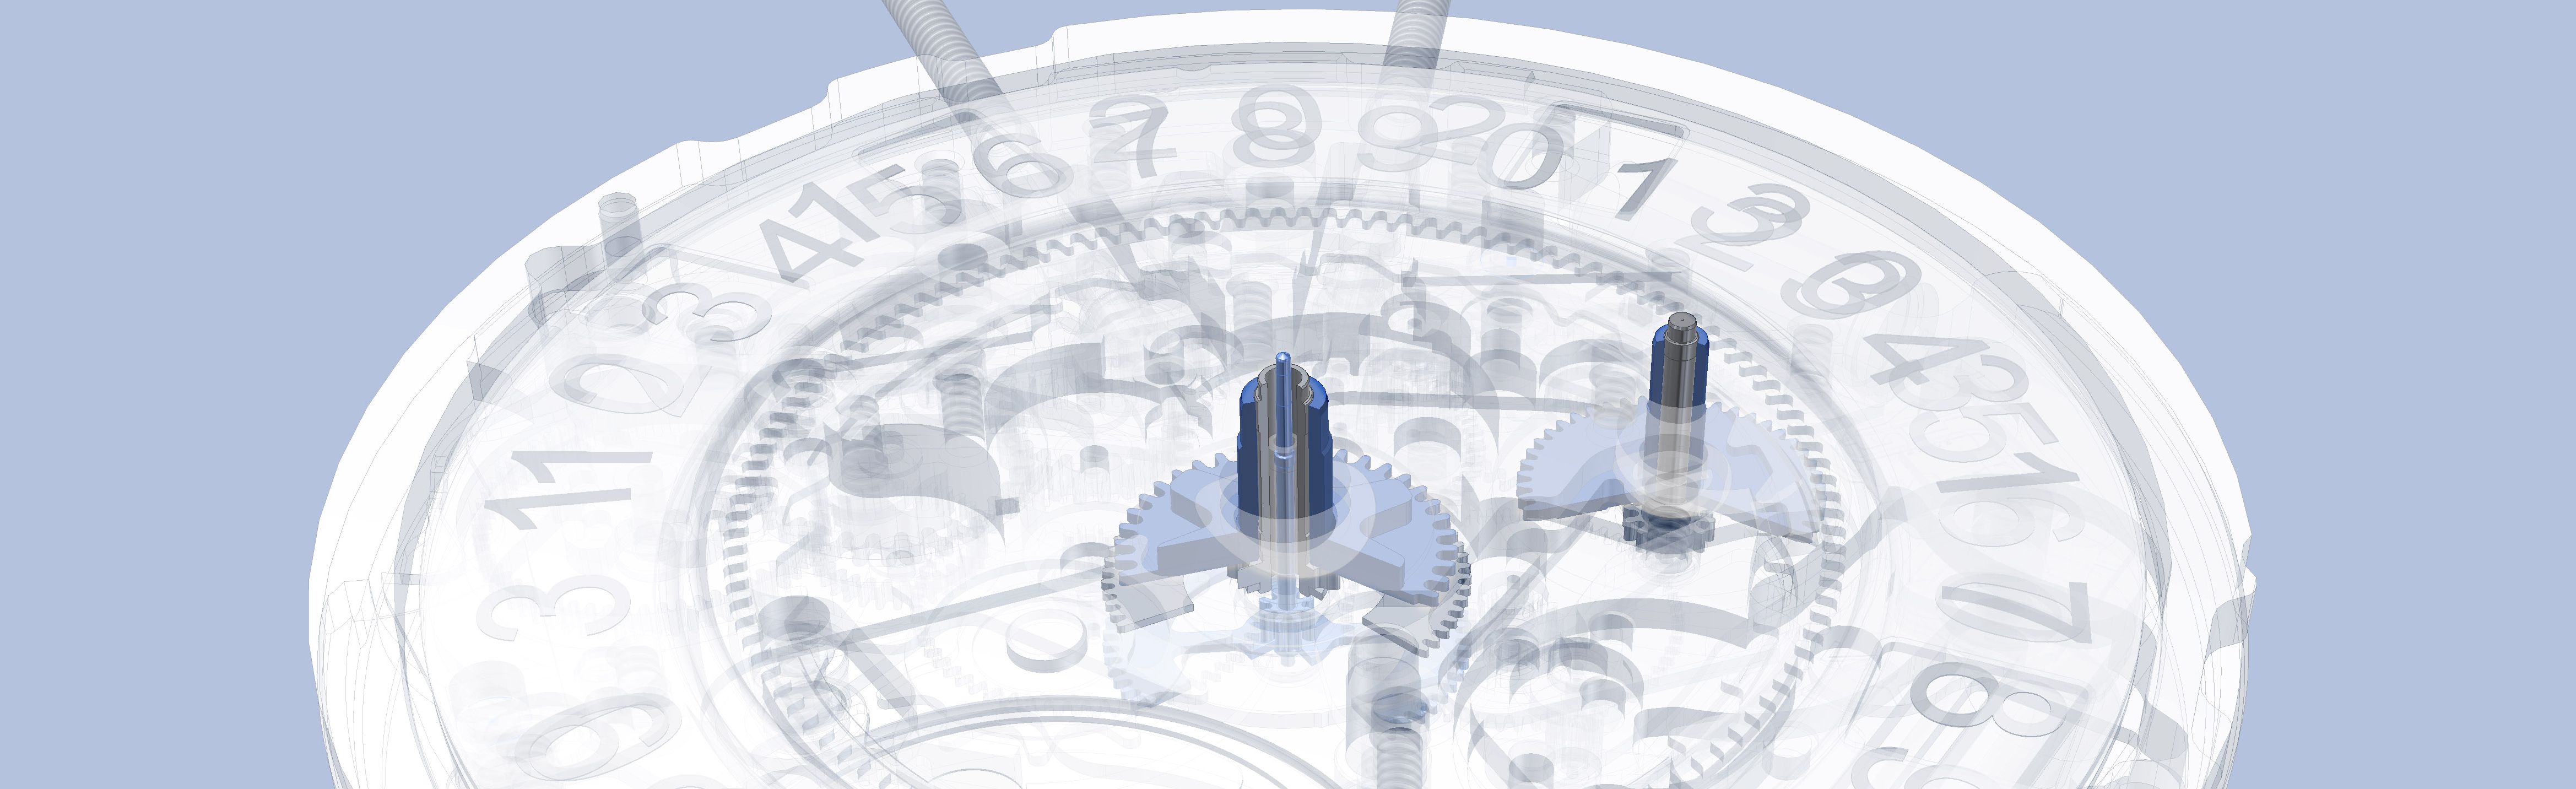 CAD-Darstellung des Ronda normtech Quarz Uhrwerks 6203.B